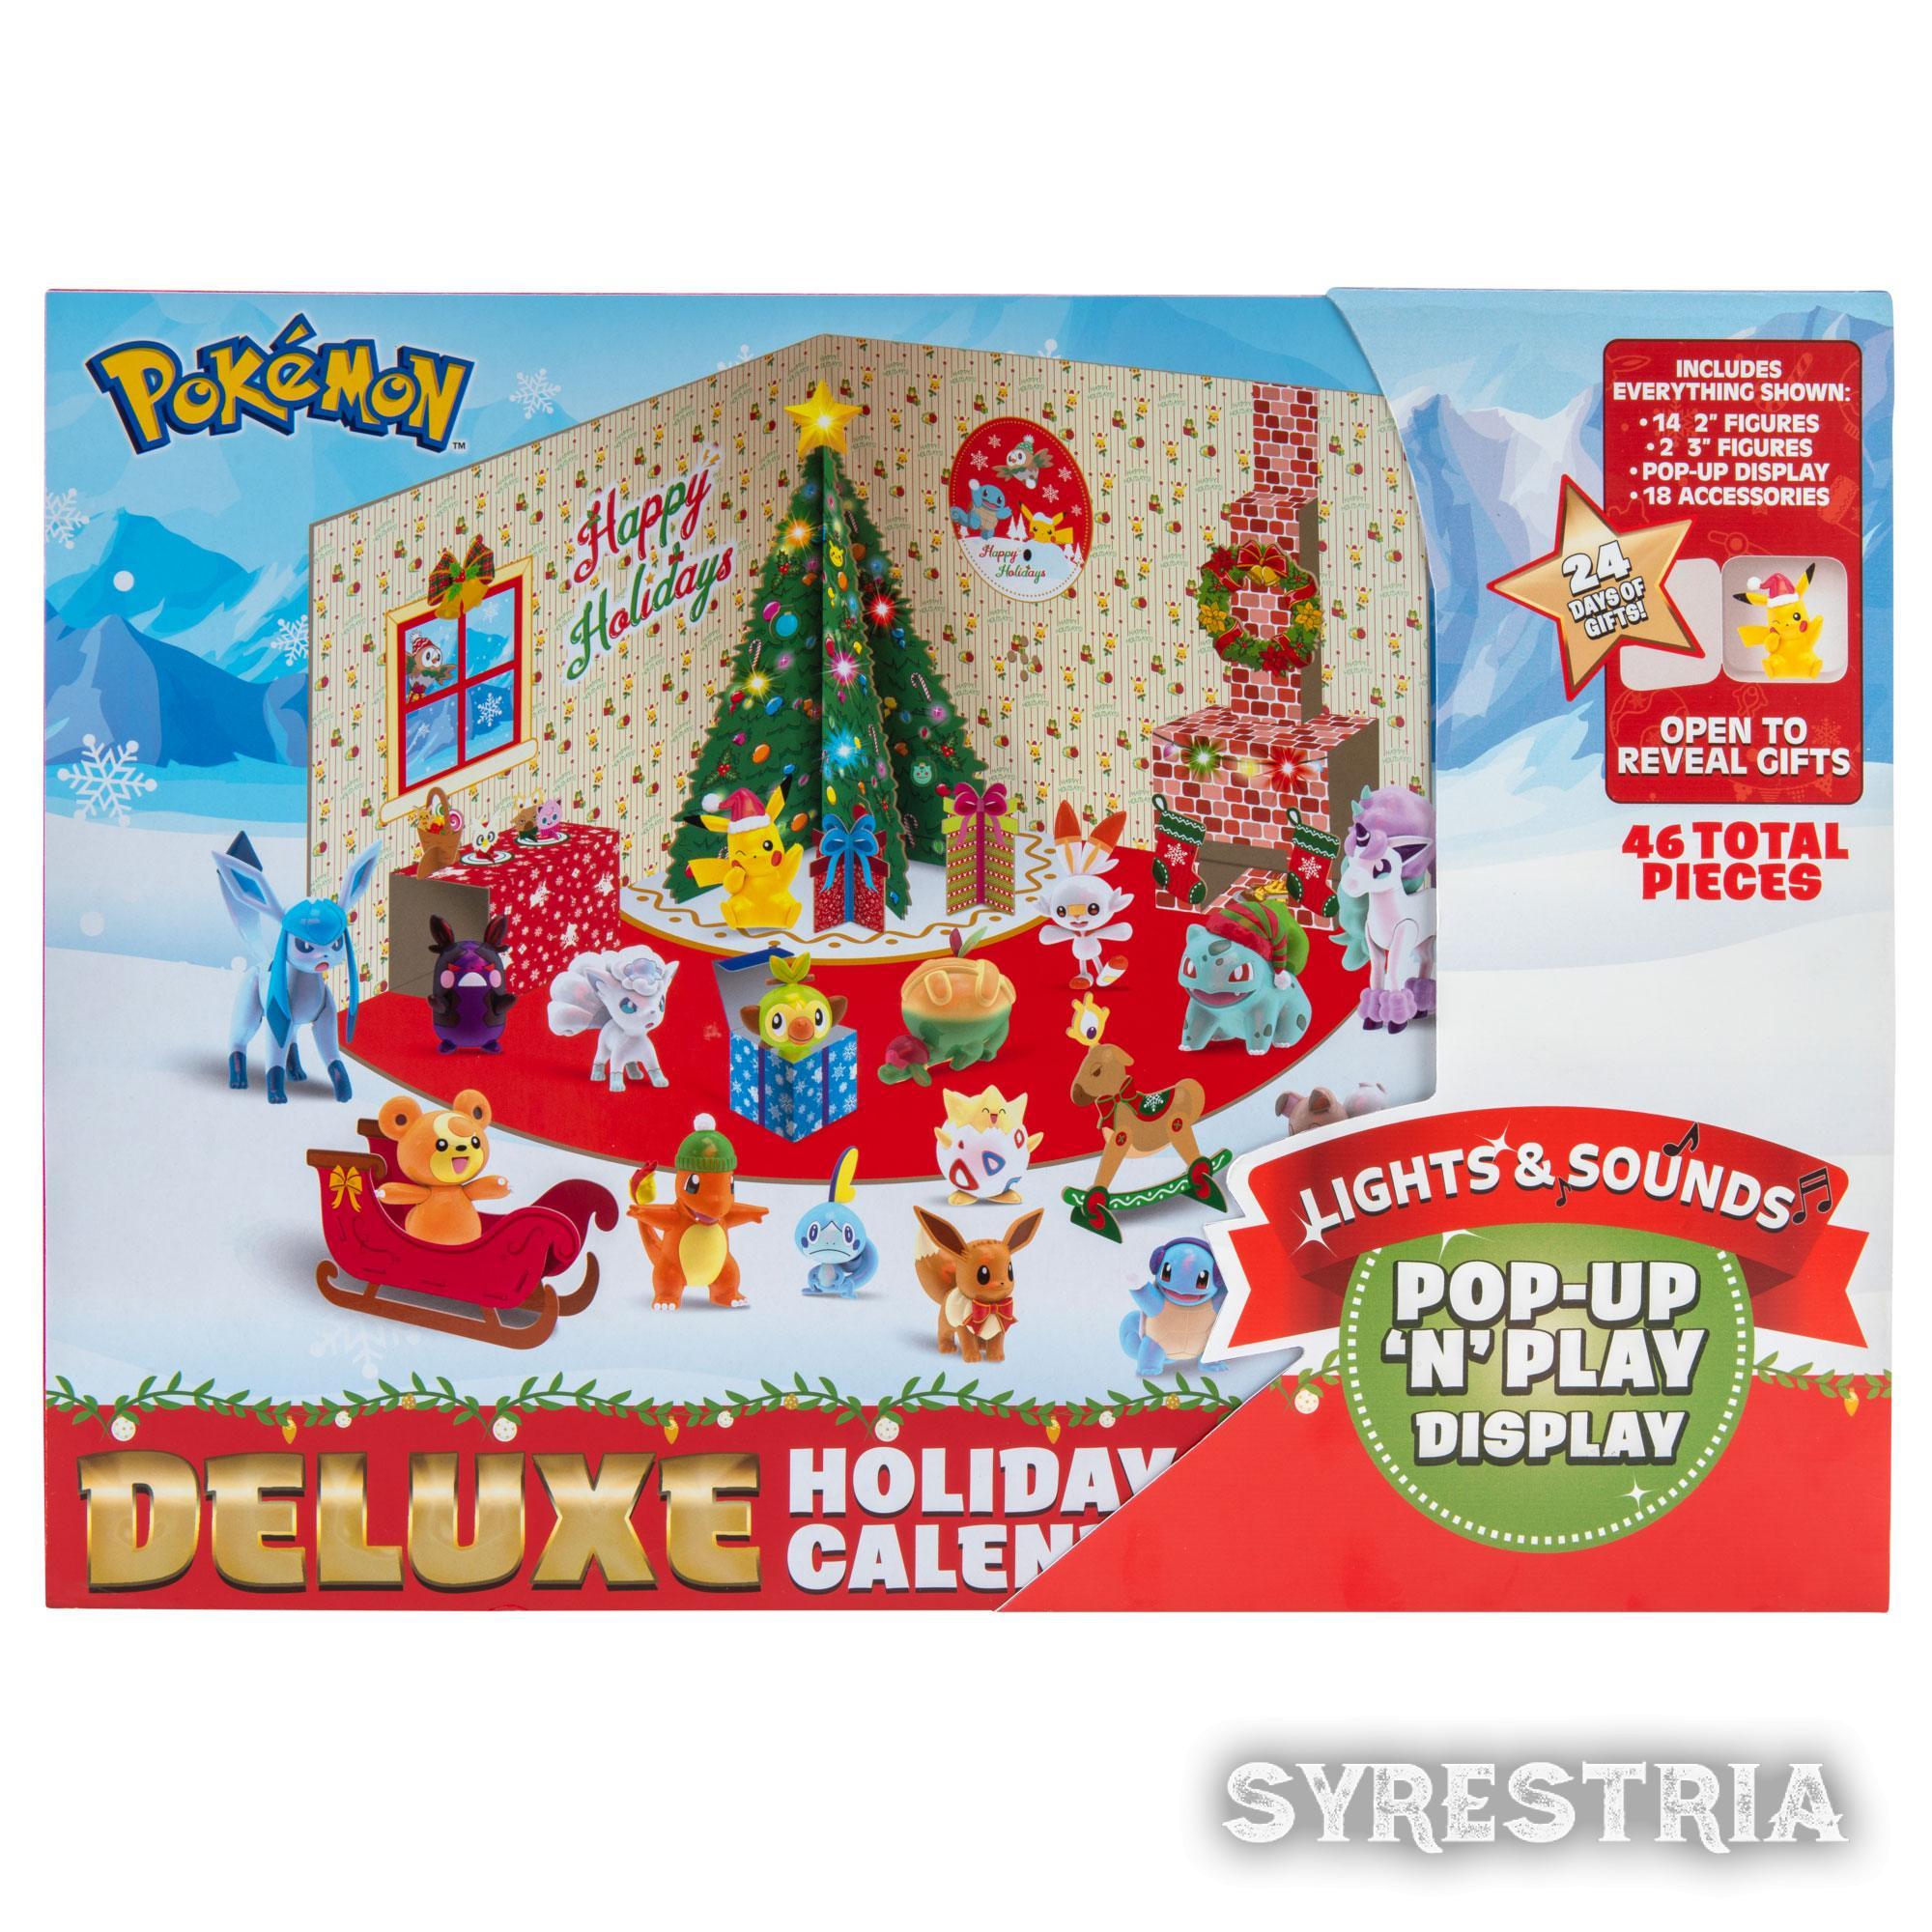 Pokemon Deluxe Adventskalender Holiday 2021 Calendar Feiertagskalender 24 Türen / 46 Teile